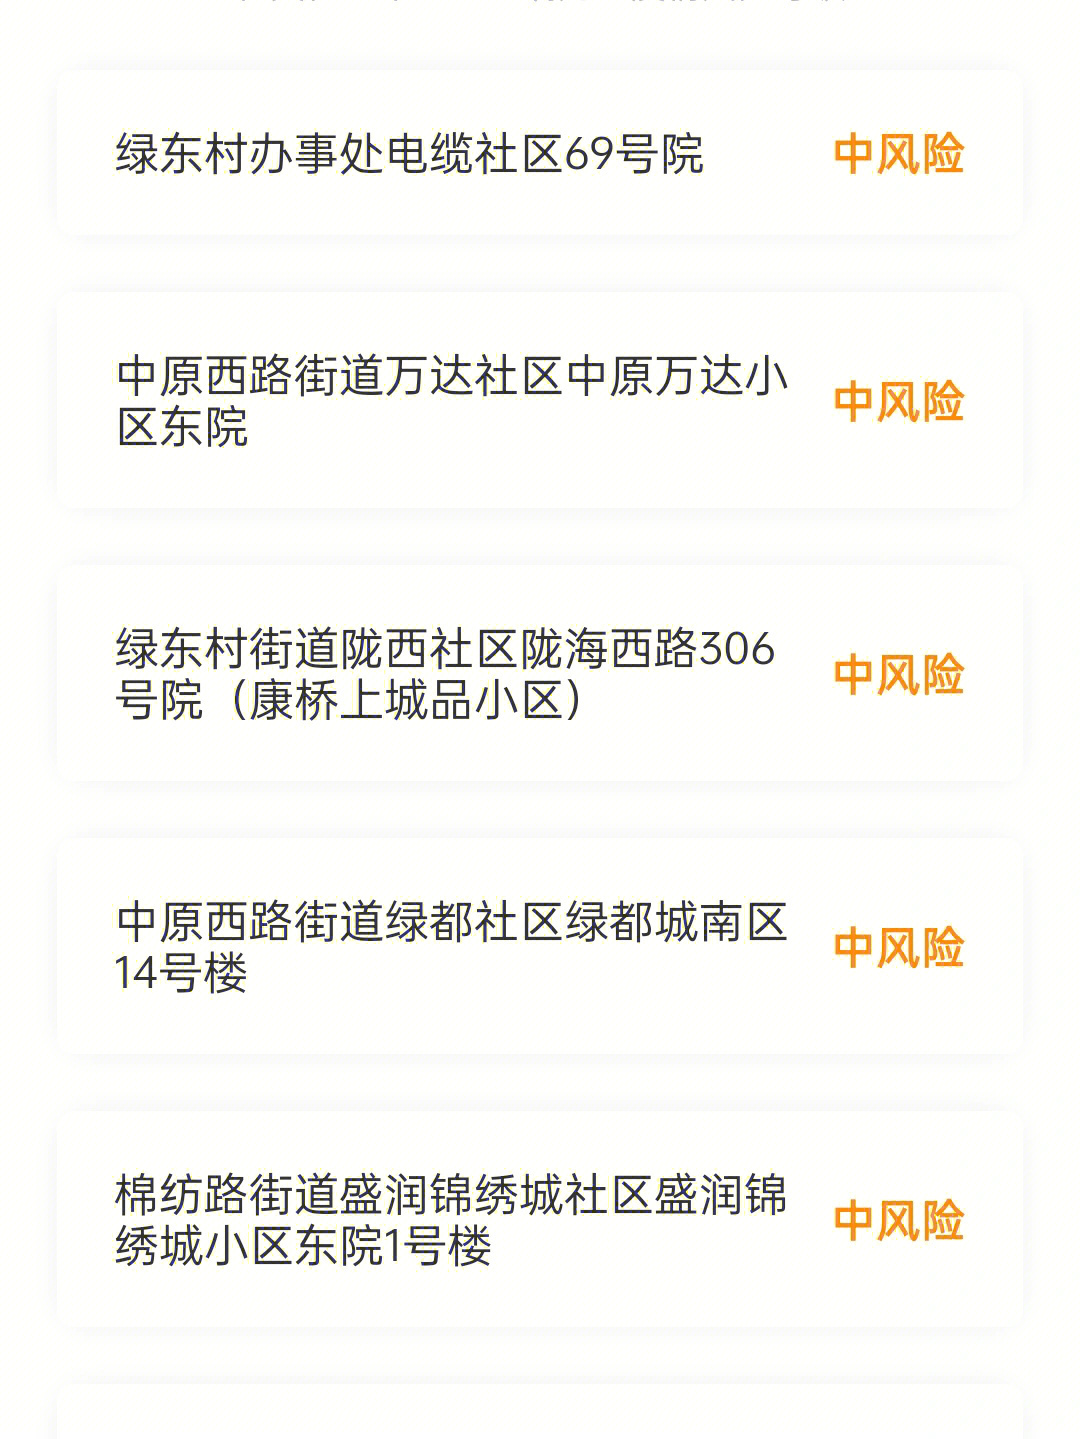 郑州集中隔离酒店名单图片